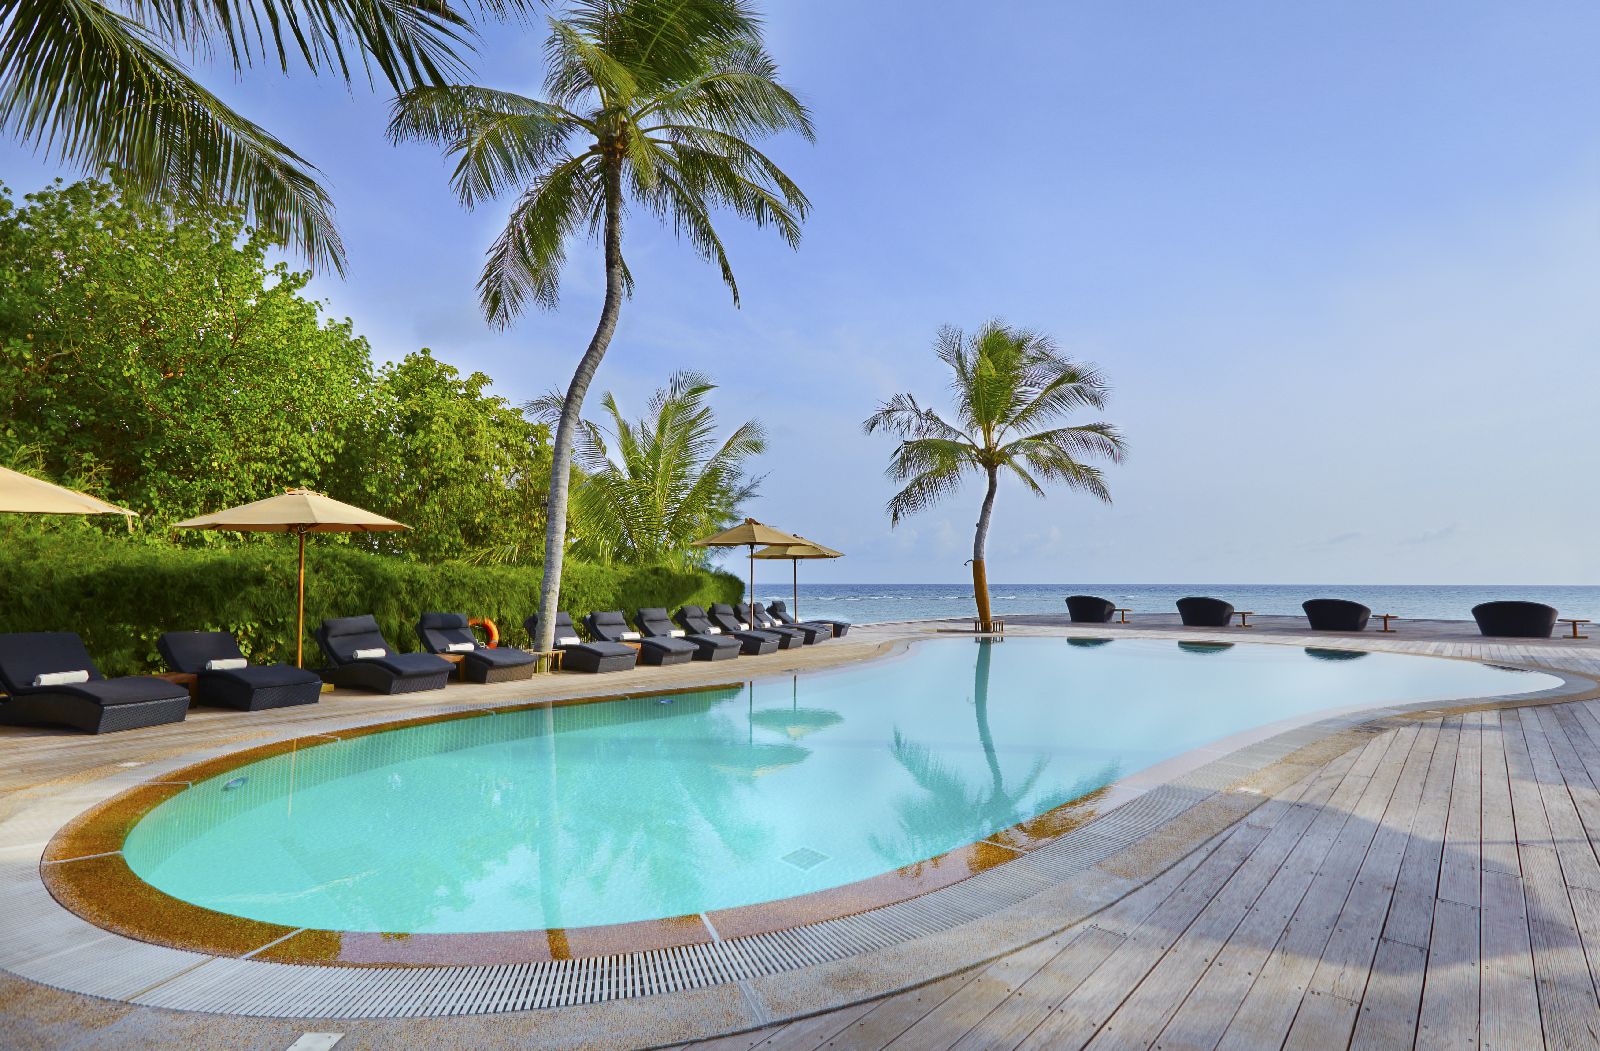 Swimmin pool at Kuredu Resort and Spa Maldives